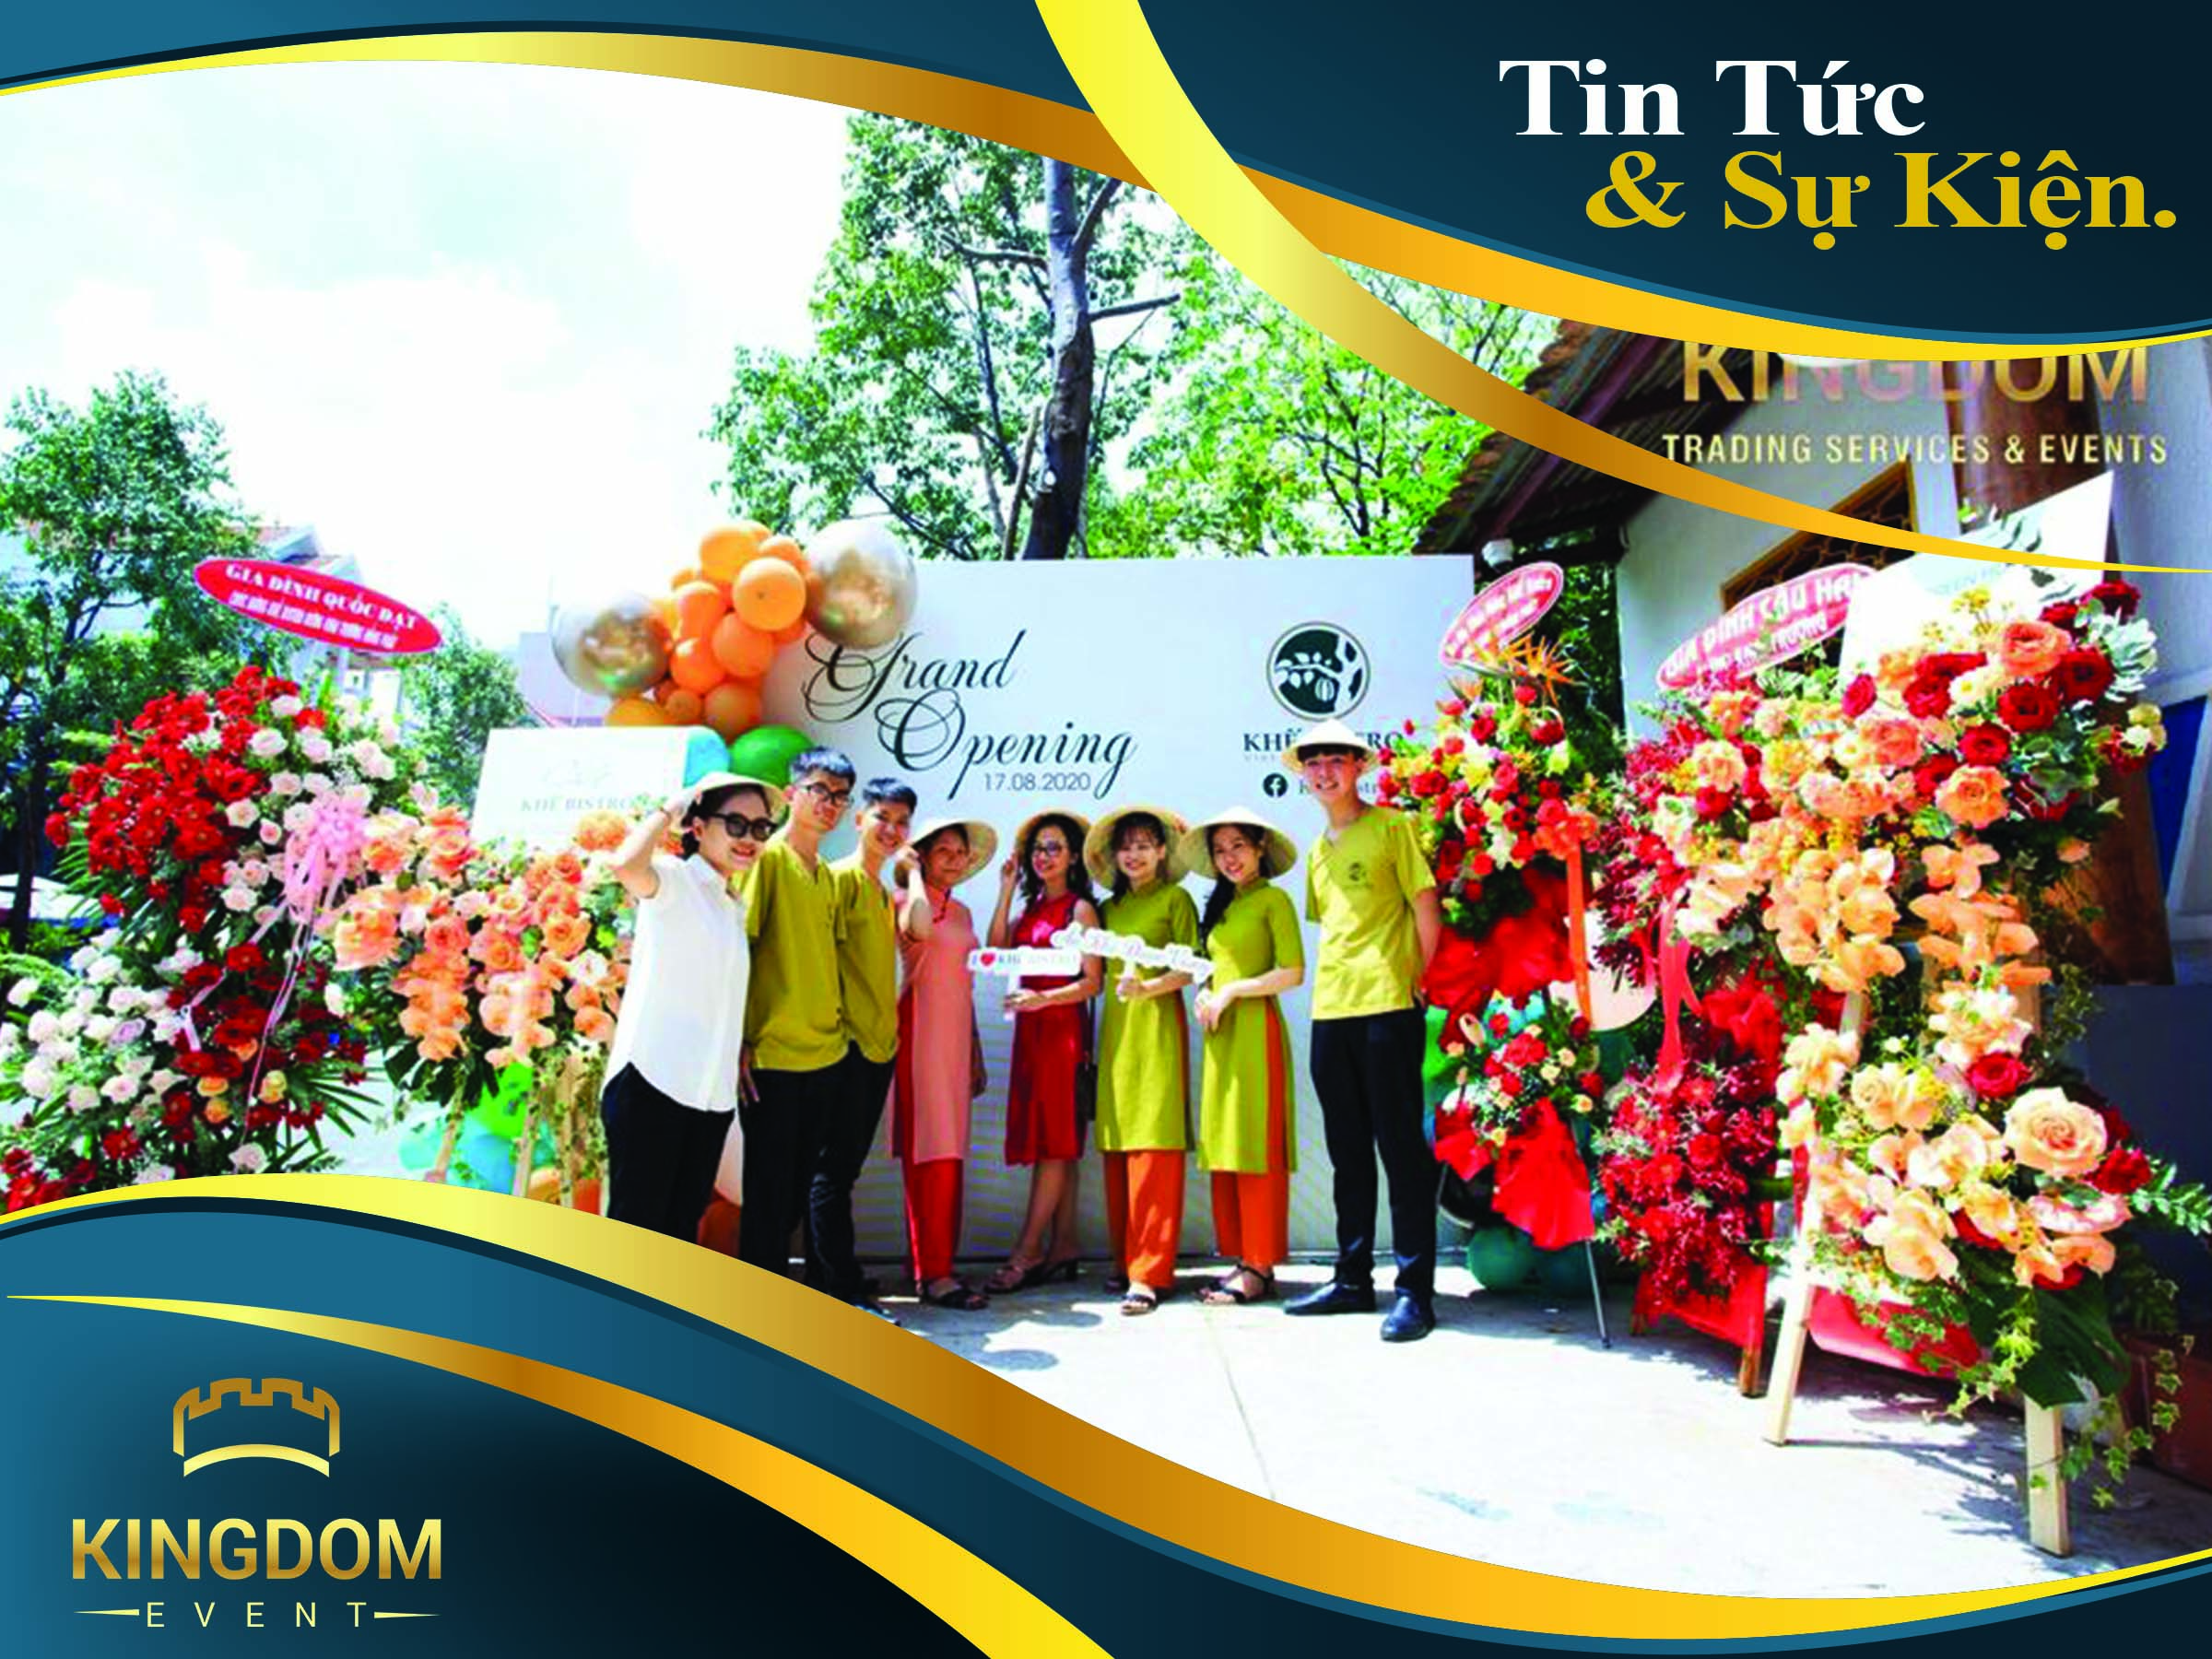 Grand Opening Khế Bistro - Nhà hàng ẩm thực Việt Nam sự kiện cá nhân Kingdom Event